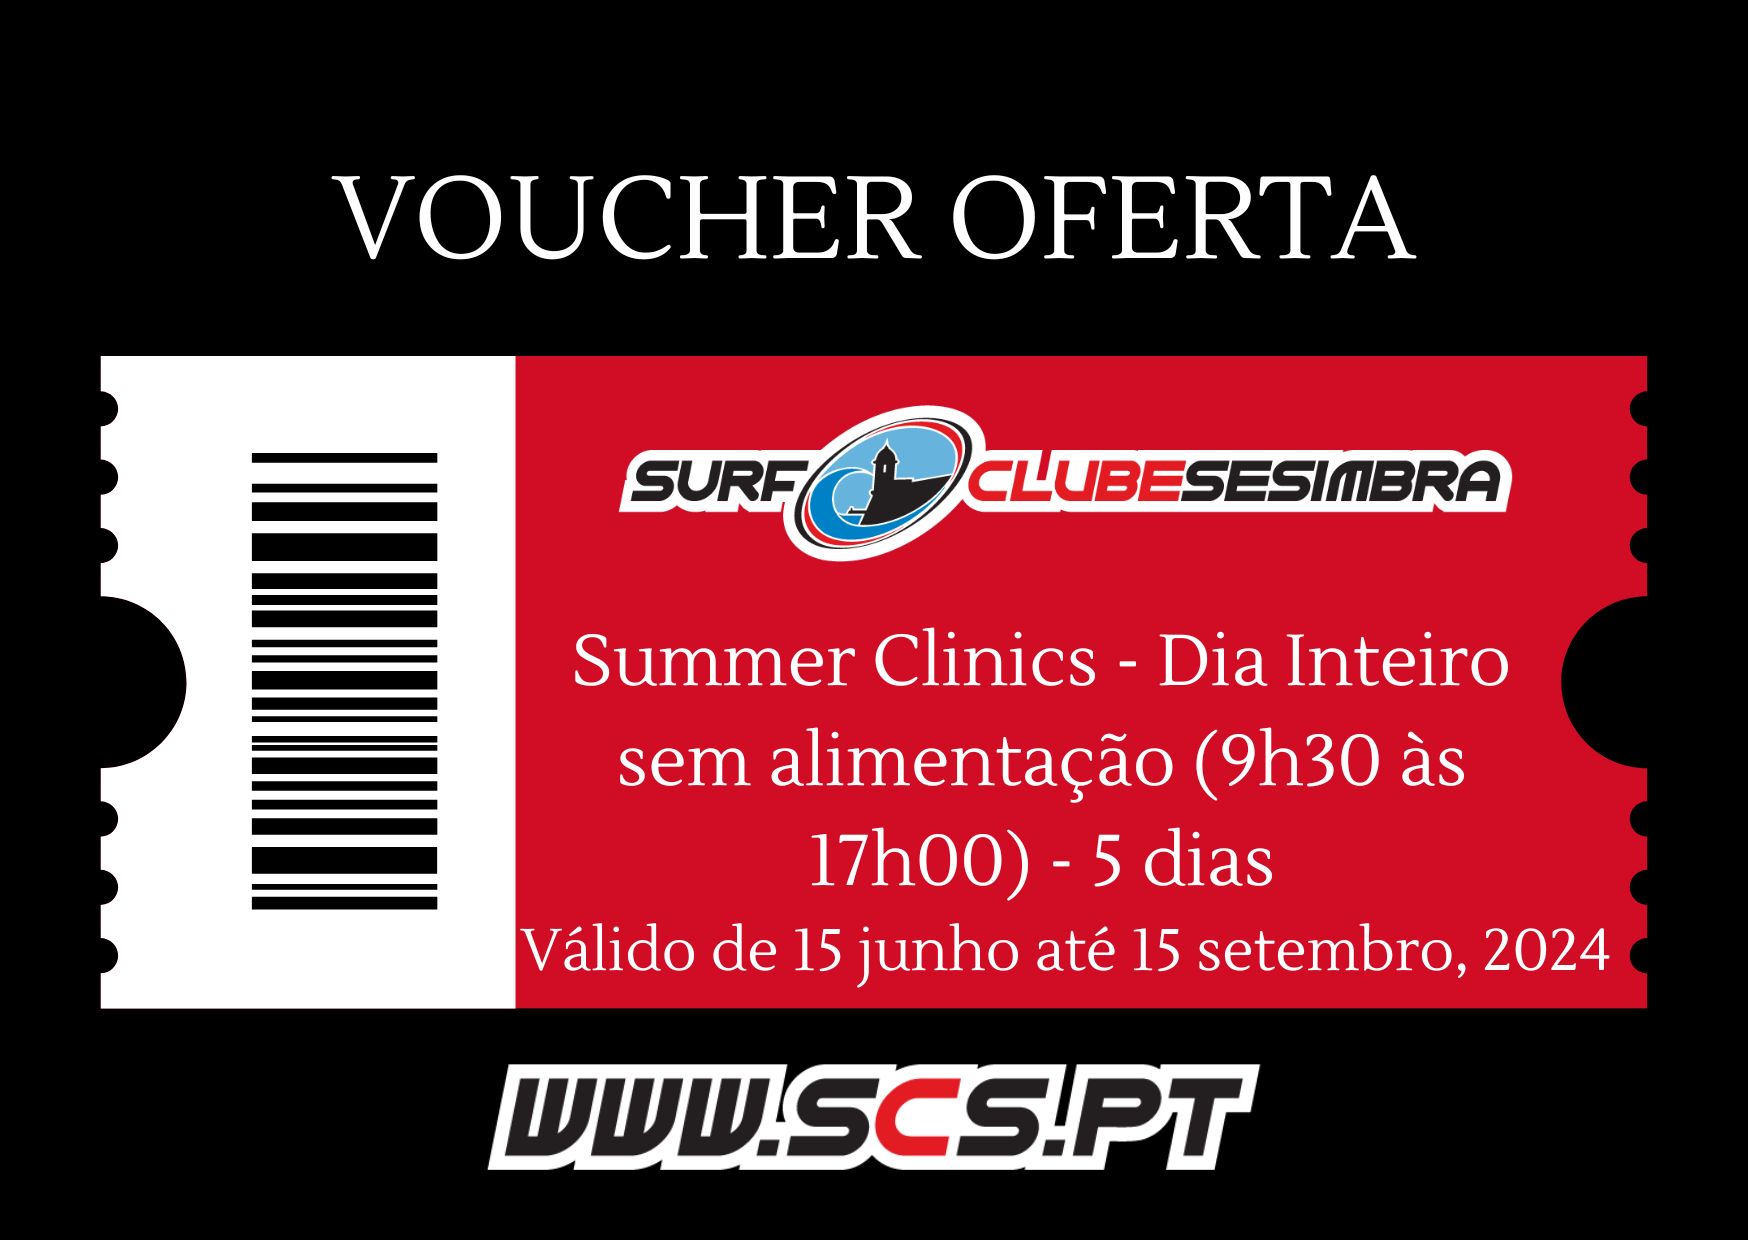 Voucher Oferta Summer Clinics - Dia Inteiro sem alimentação (9h30 às 17h00) - 5 dias